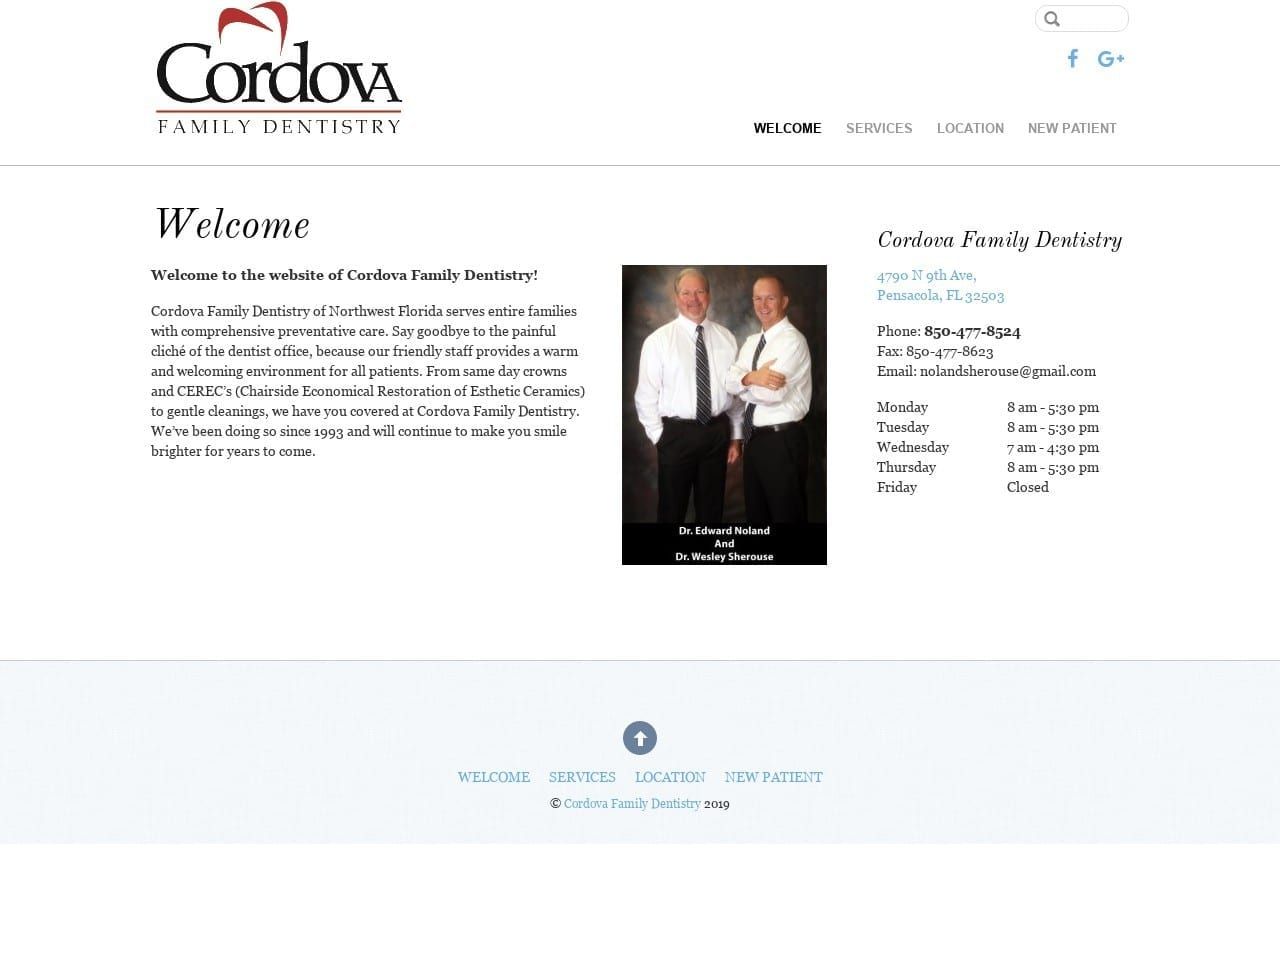 Cordova Family Dentistry Noland Edward A DDS Website Screenshot from nolandsherouse.com